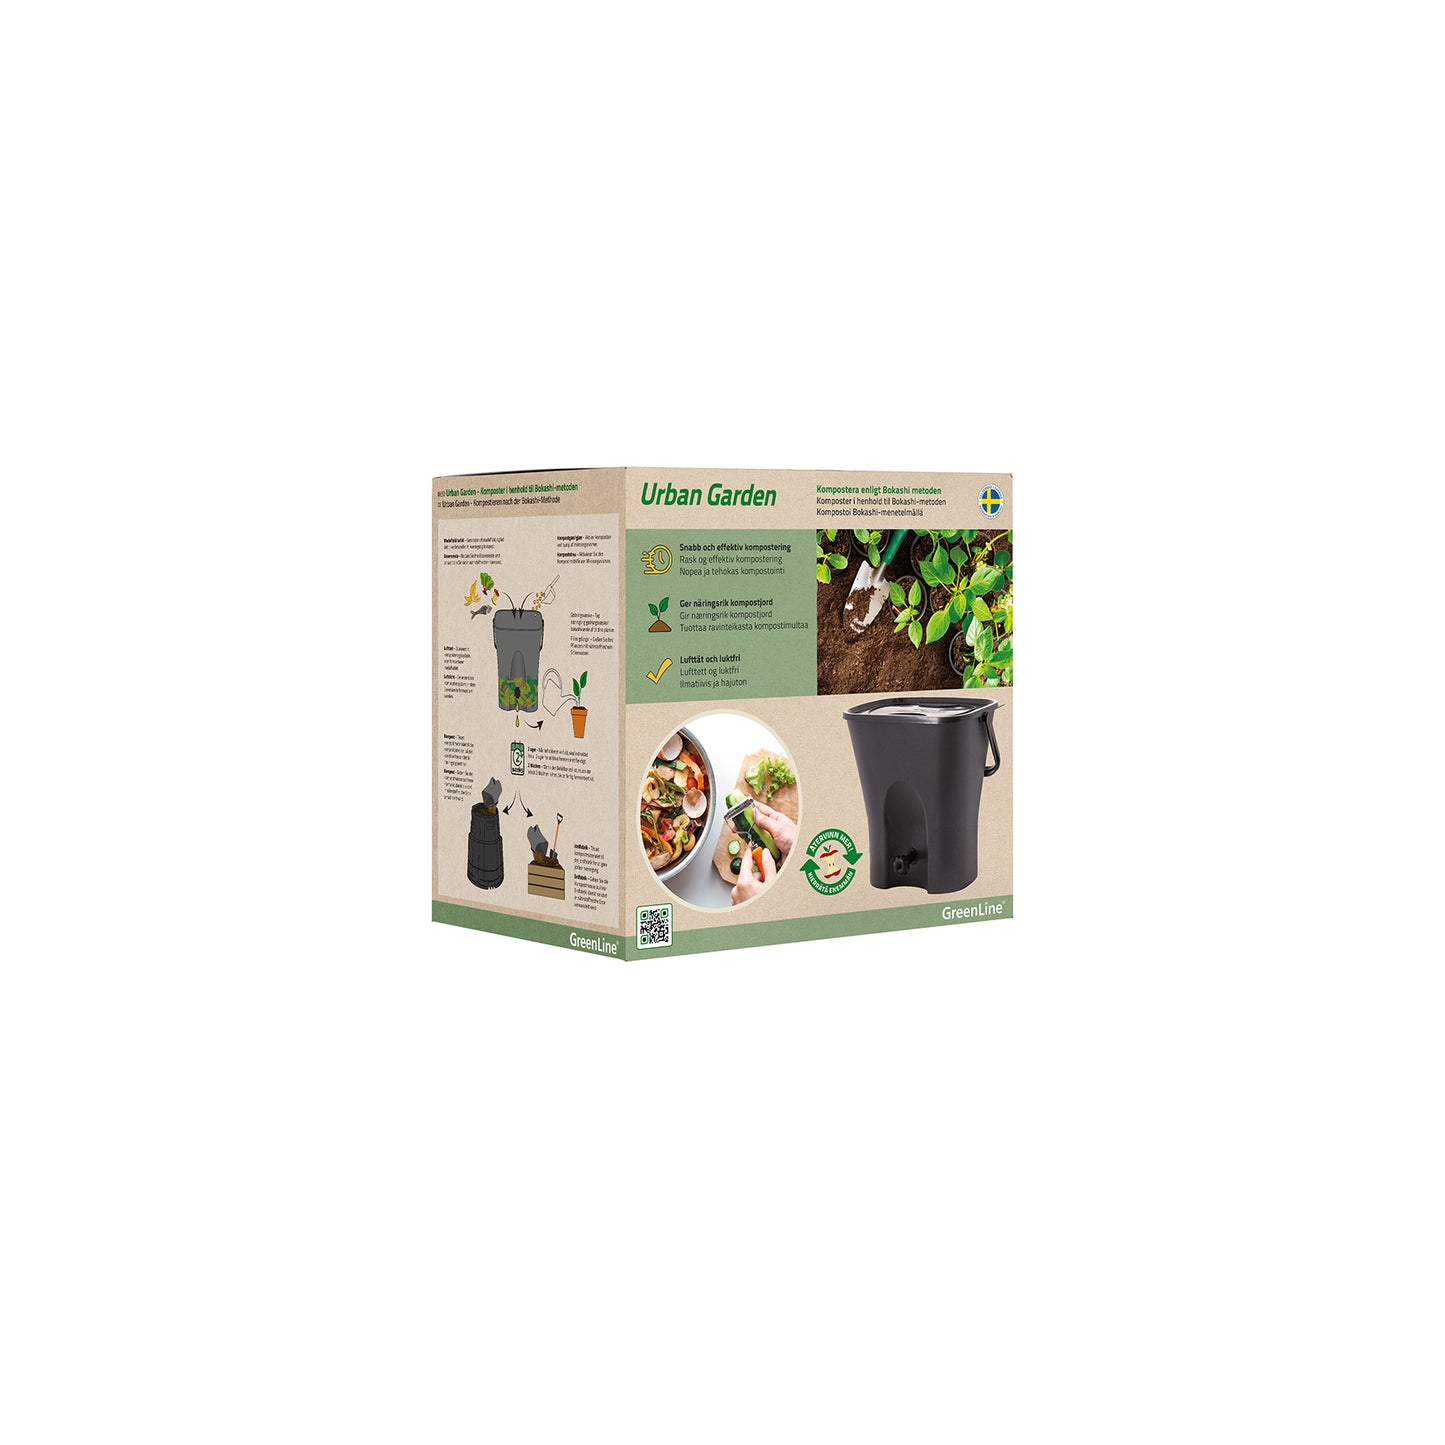 Kitchen compost Urban Garden 2.0 